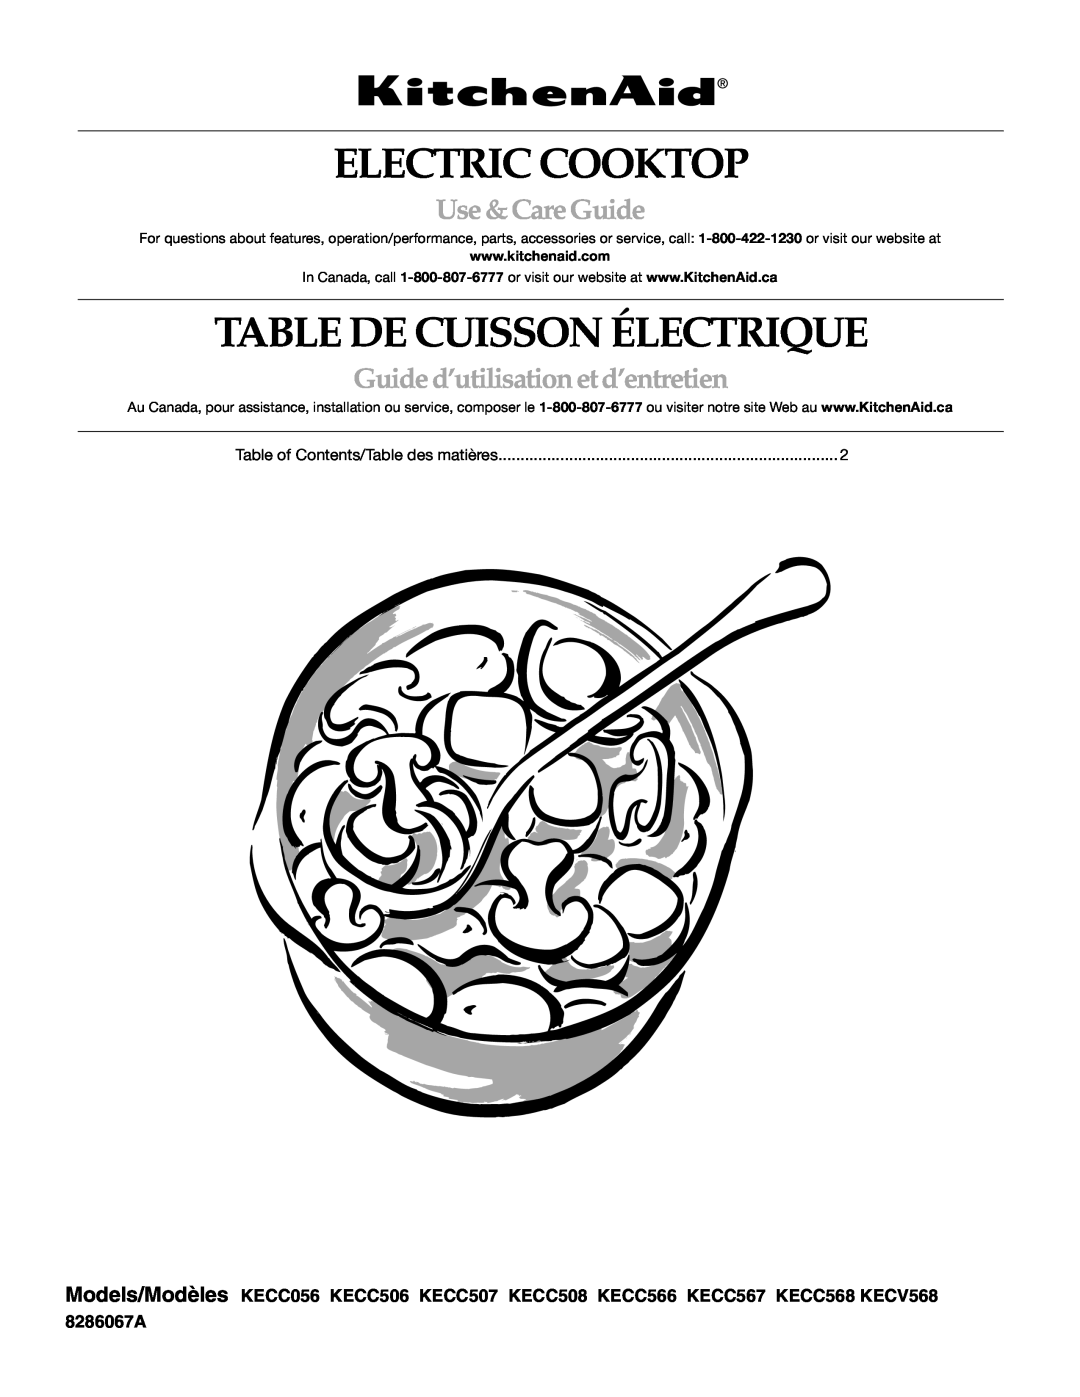 KitchenAid KECC056 manual Electric Cooktop, Table De Cuisson Électrique, Use &CareGuide, Guided’utilisation et d’entretien 